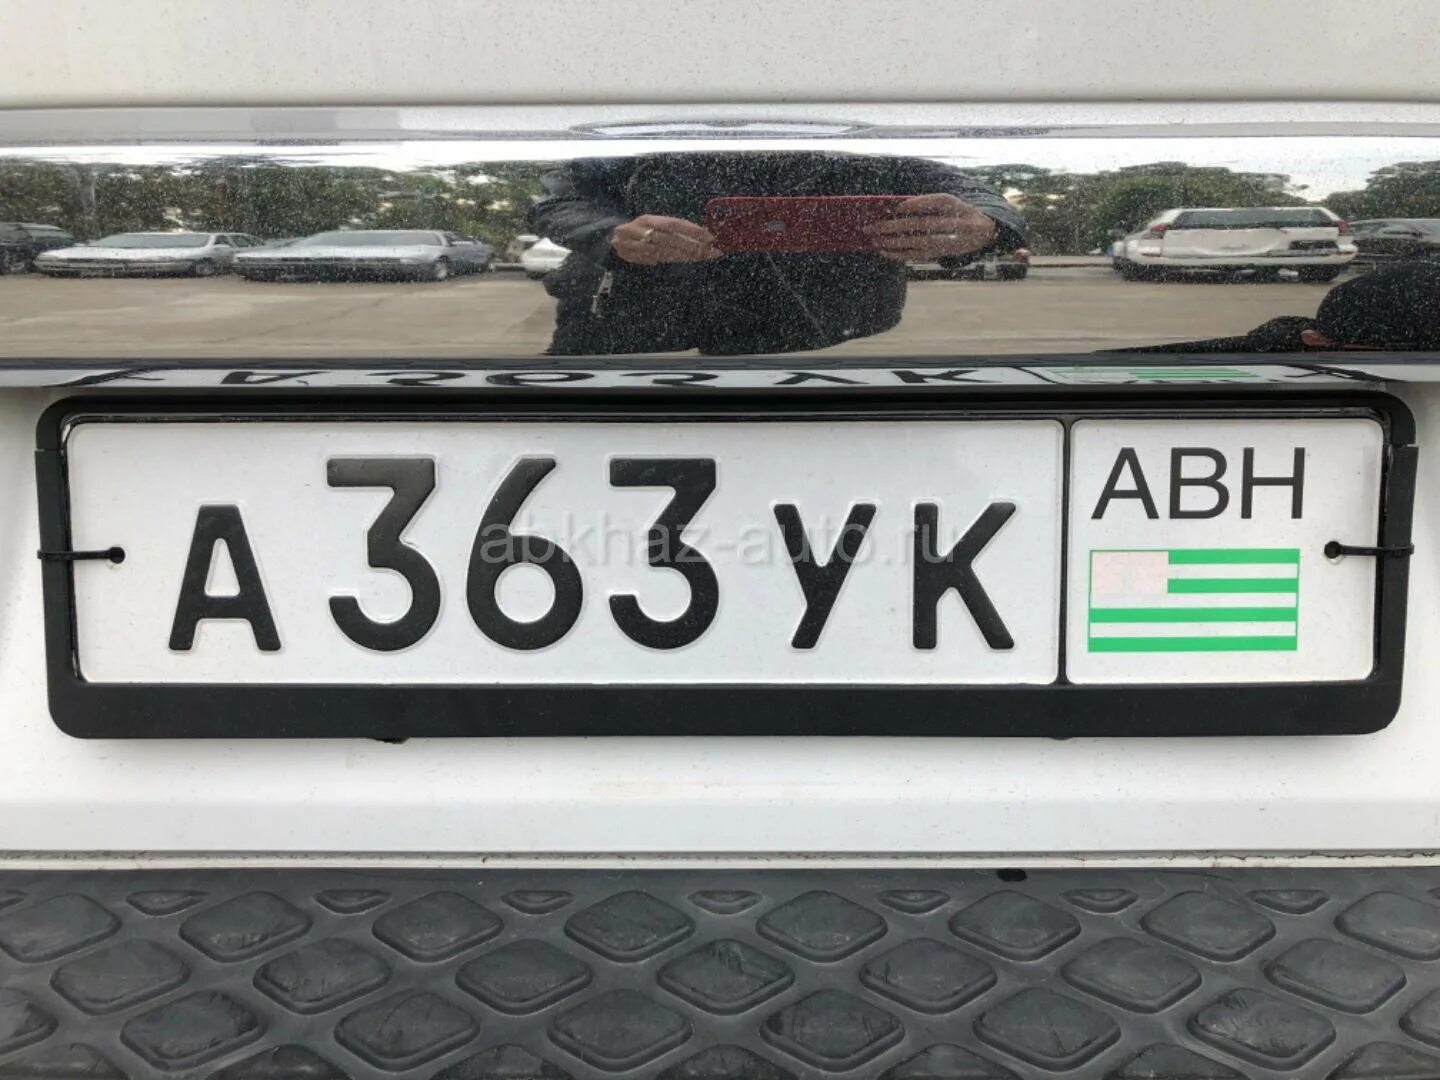 Номера Абхазии автомобильные. Гос номера Абхазии. Номерной знак Абхазии. Абхазия гос номера машины. Как ездить на абхазских номерах